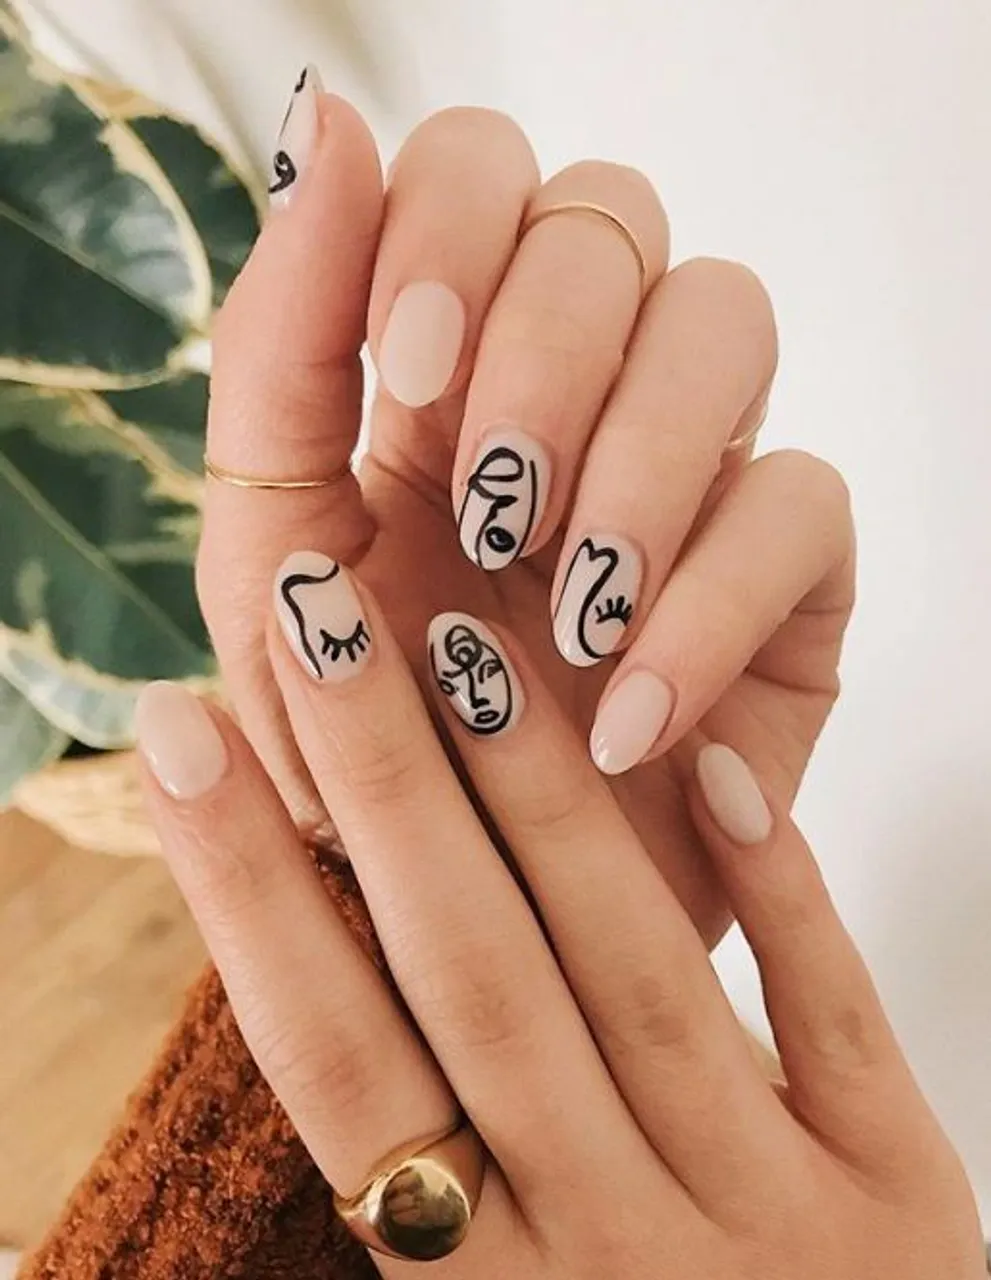 Utjecaj Pabla Picassa na ženske nokte